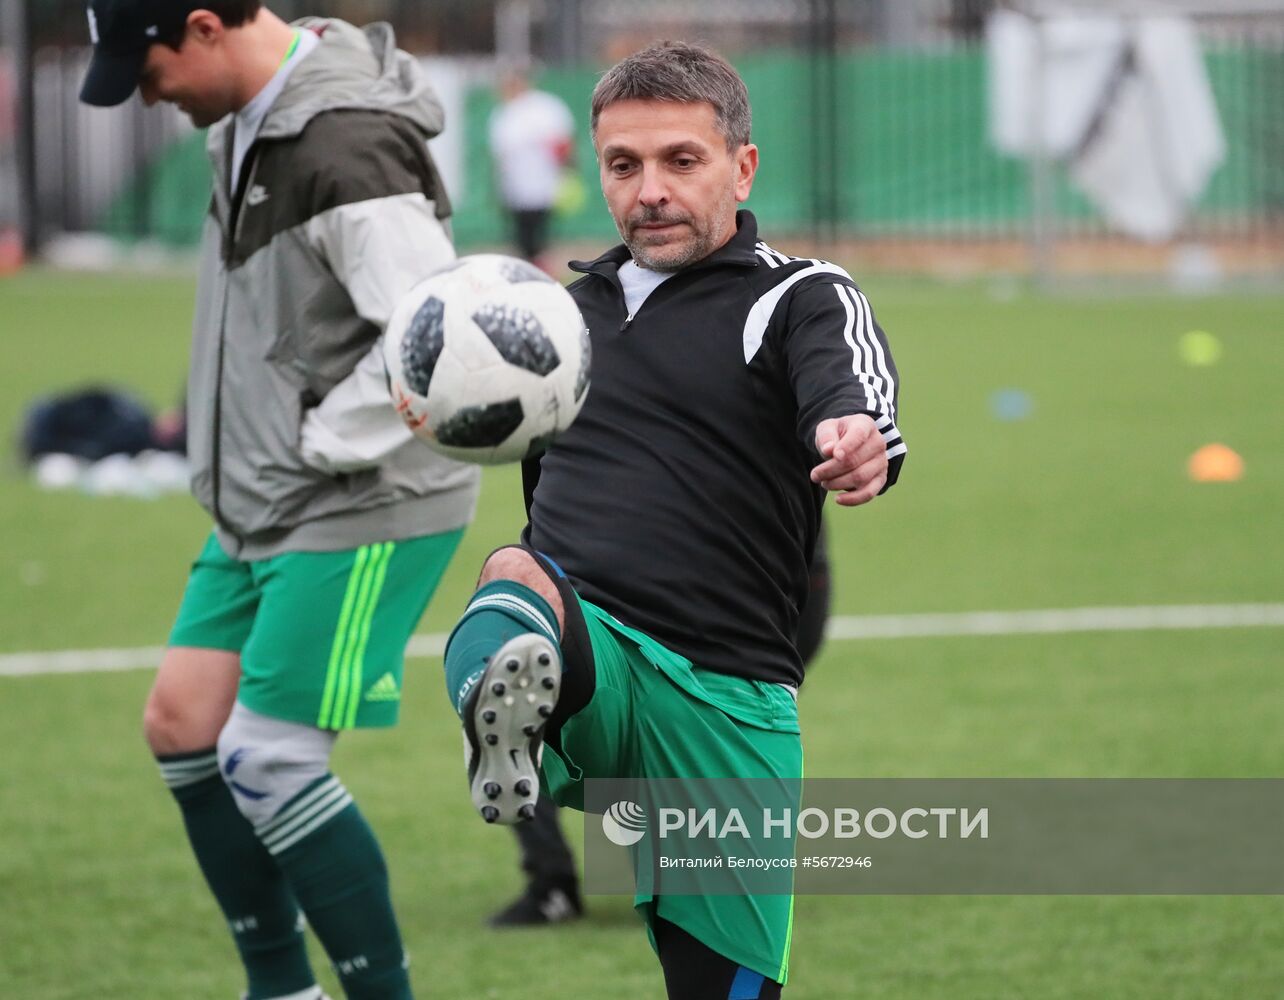 Благотворительный футбольный турнир С. Игнашевича